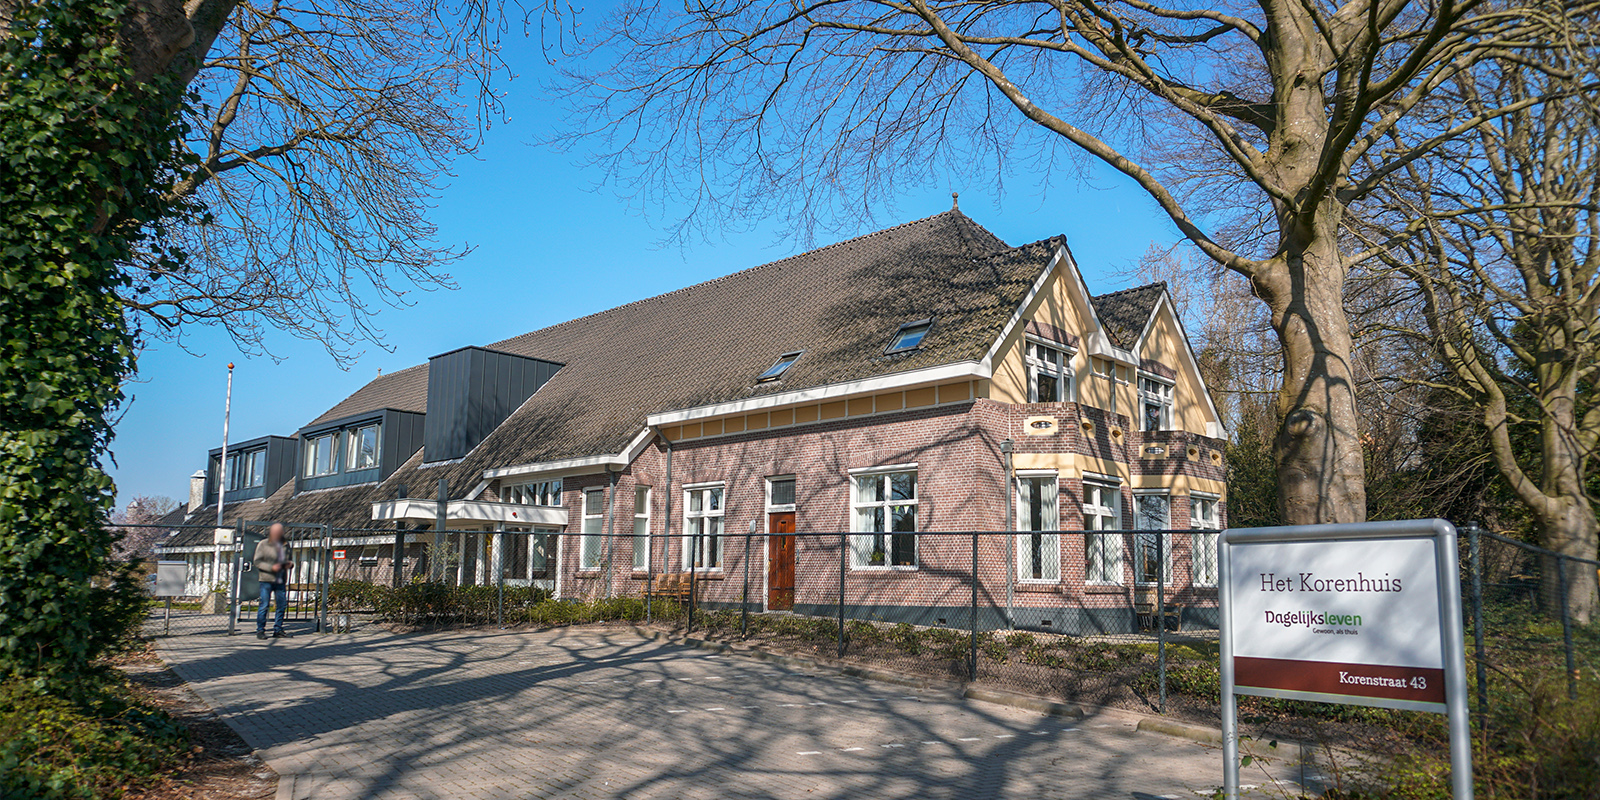 Het Korenhuis in Hoogeveen is een kleinschalige en betaalbare woonzorglocatie voor mensen met dementie